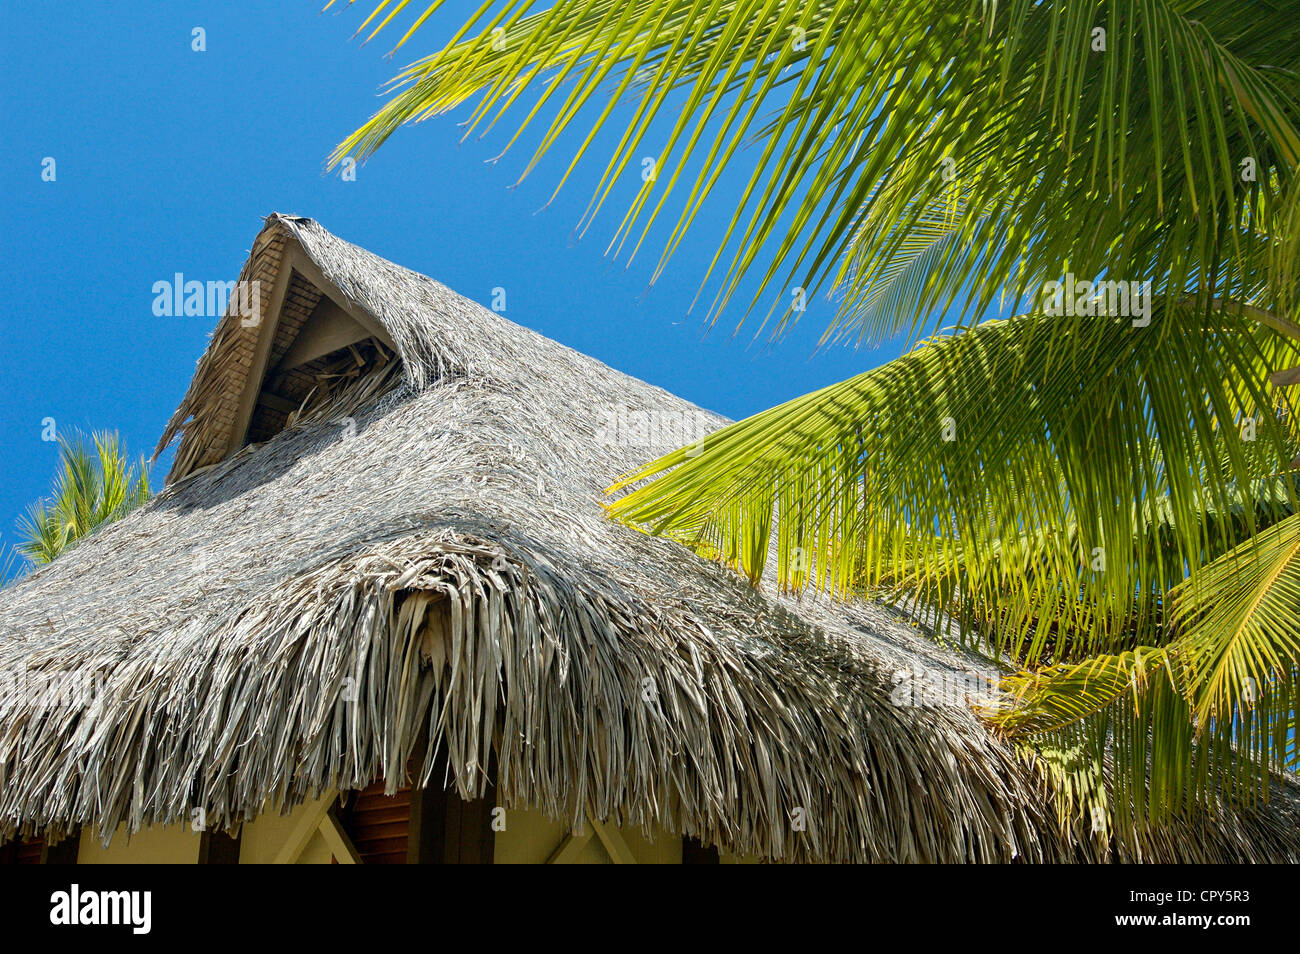 France, French Polynesia, Society Archipelago, Winward Islands, Tahiti island, Hotel Beachcomber Stock Photo